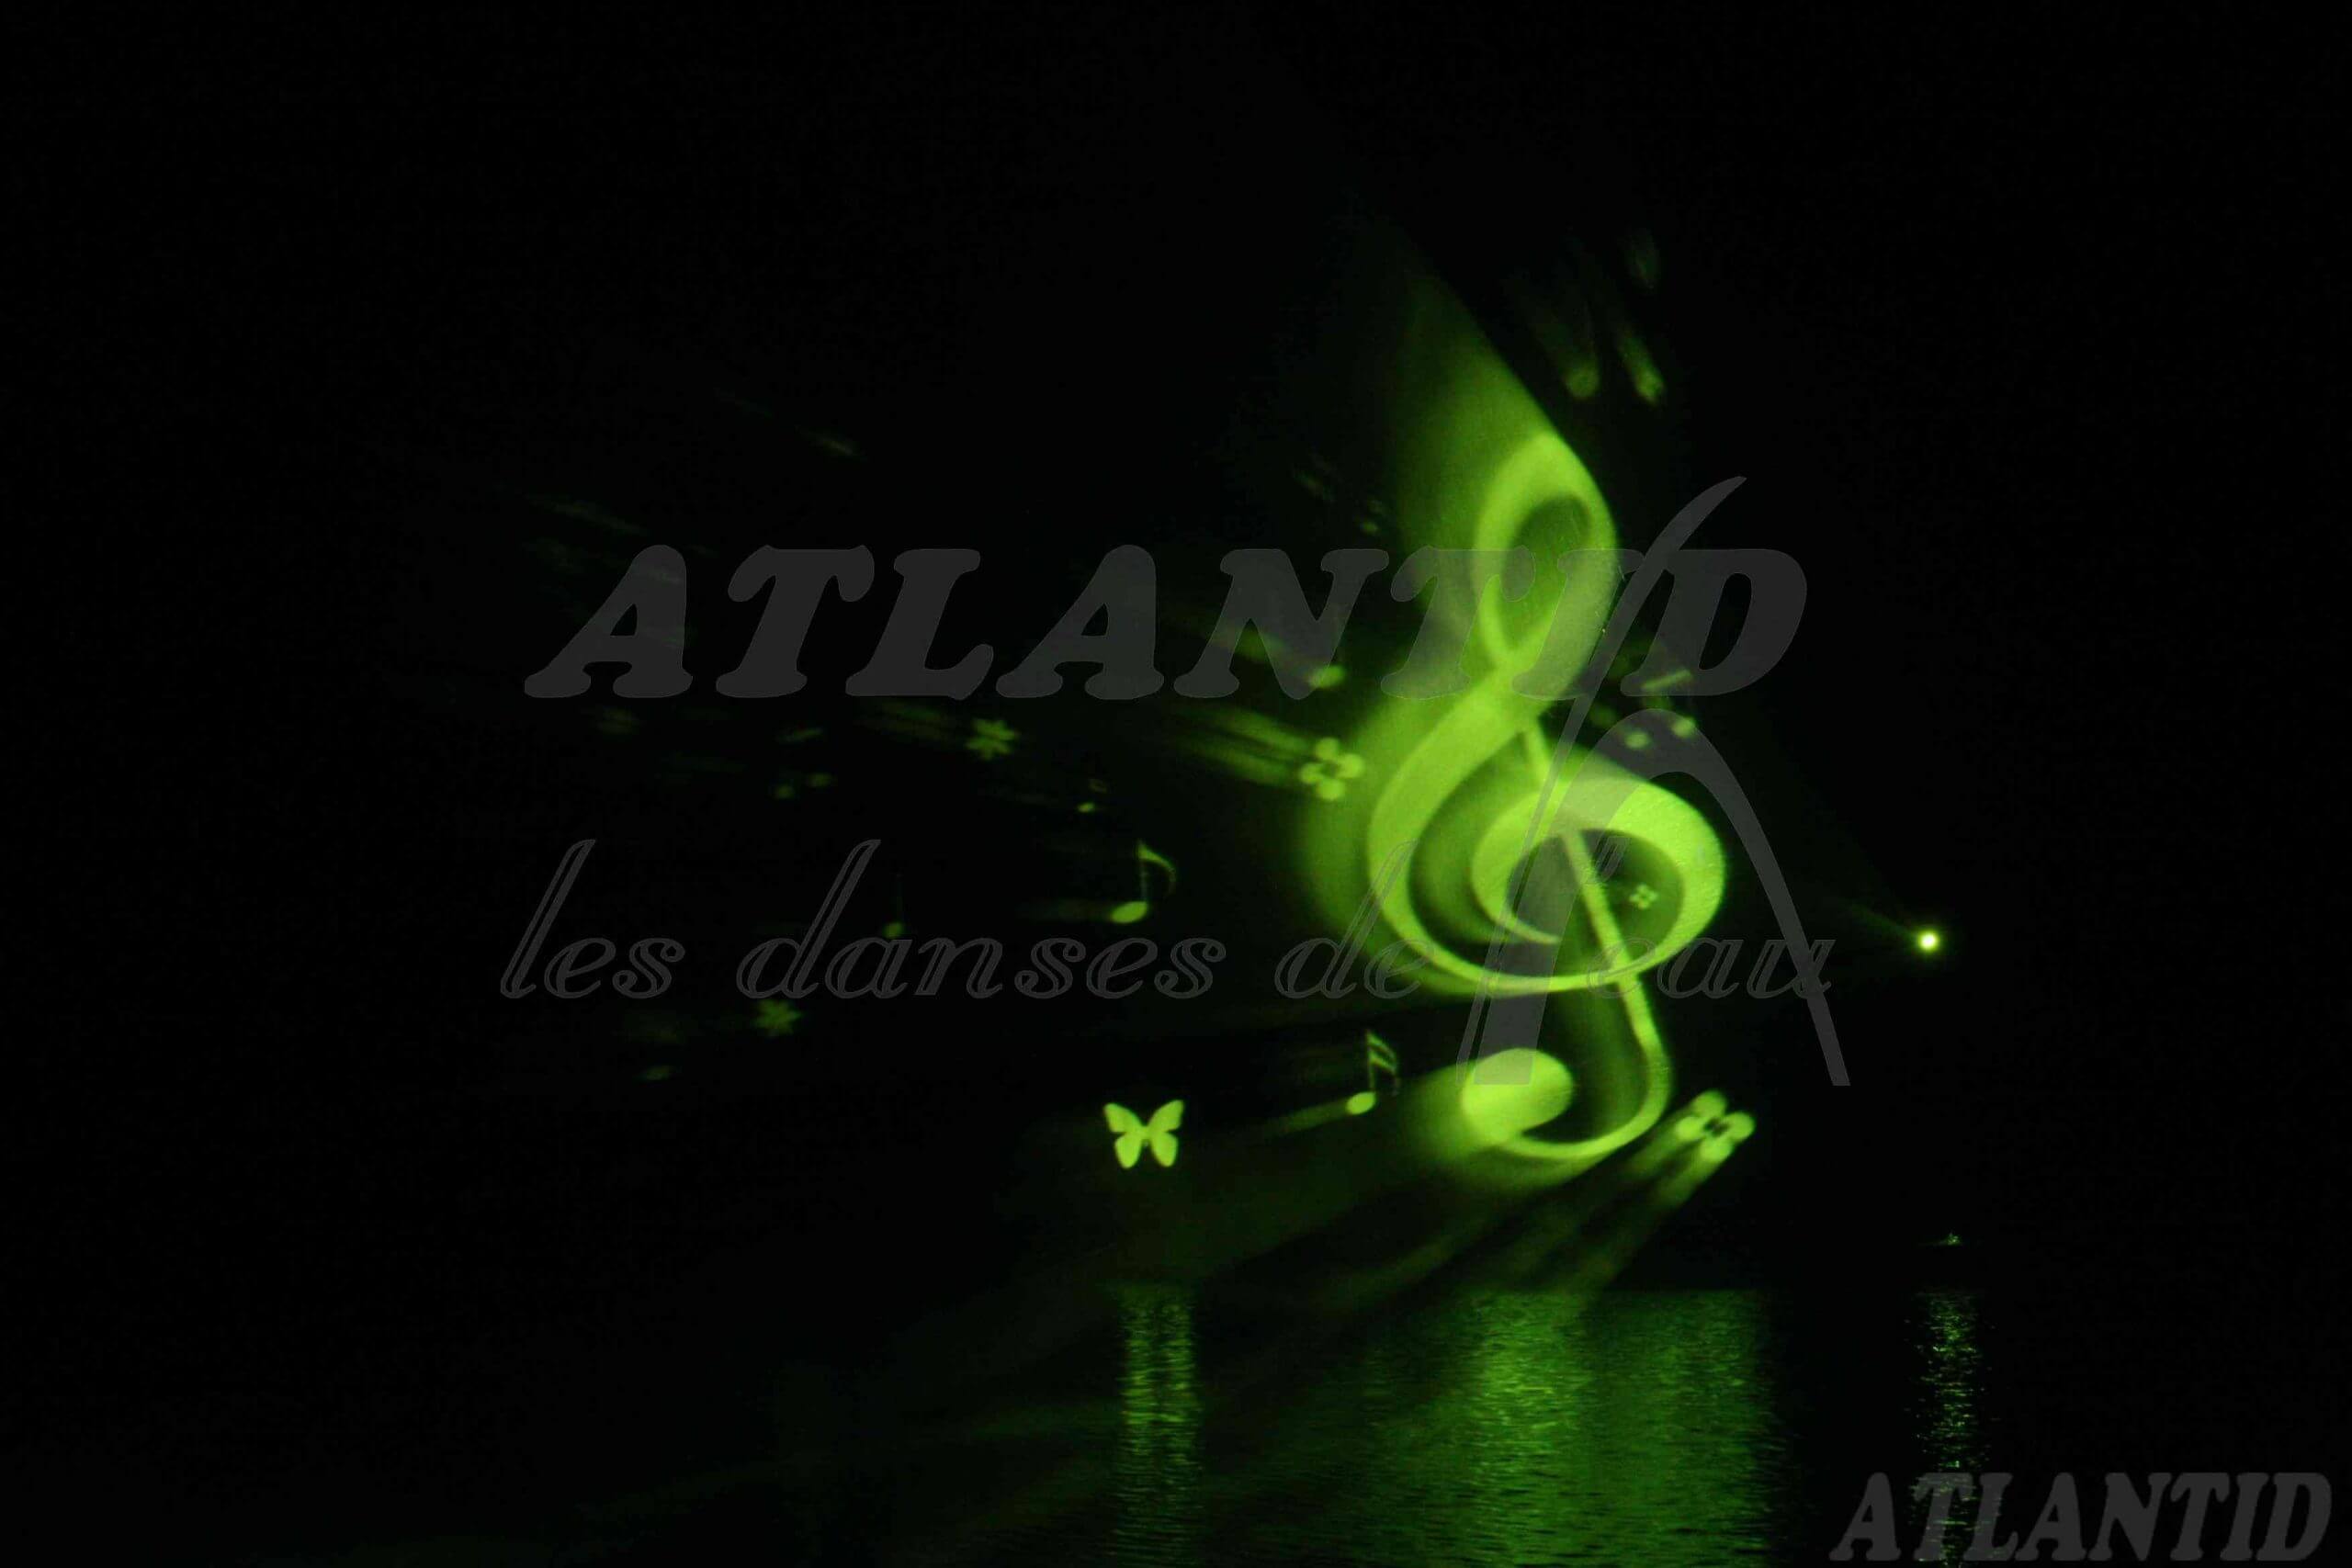 Atlantid - Proyección de una nota musical verde sobre el agua